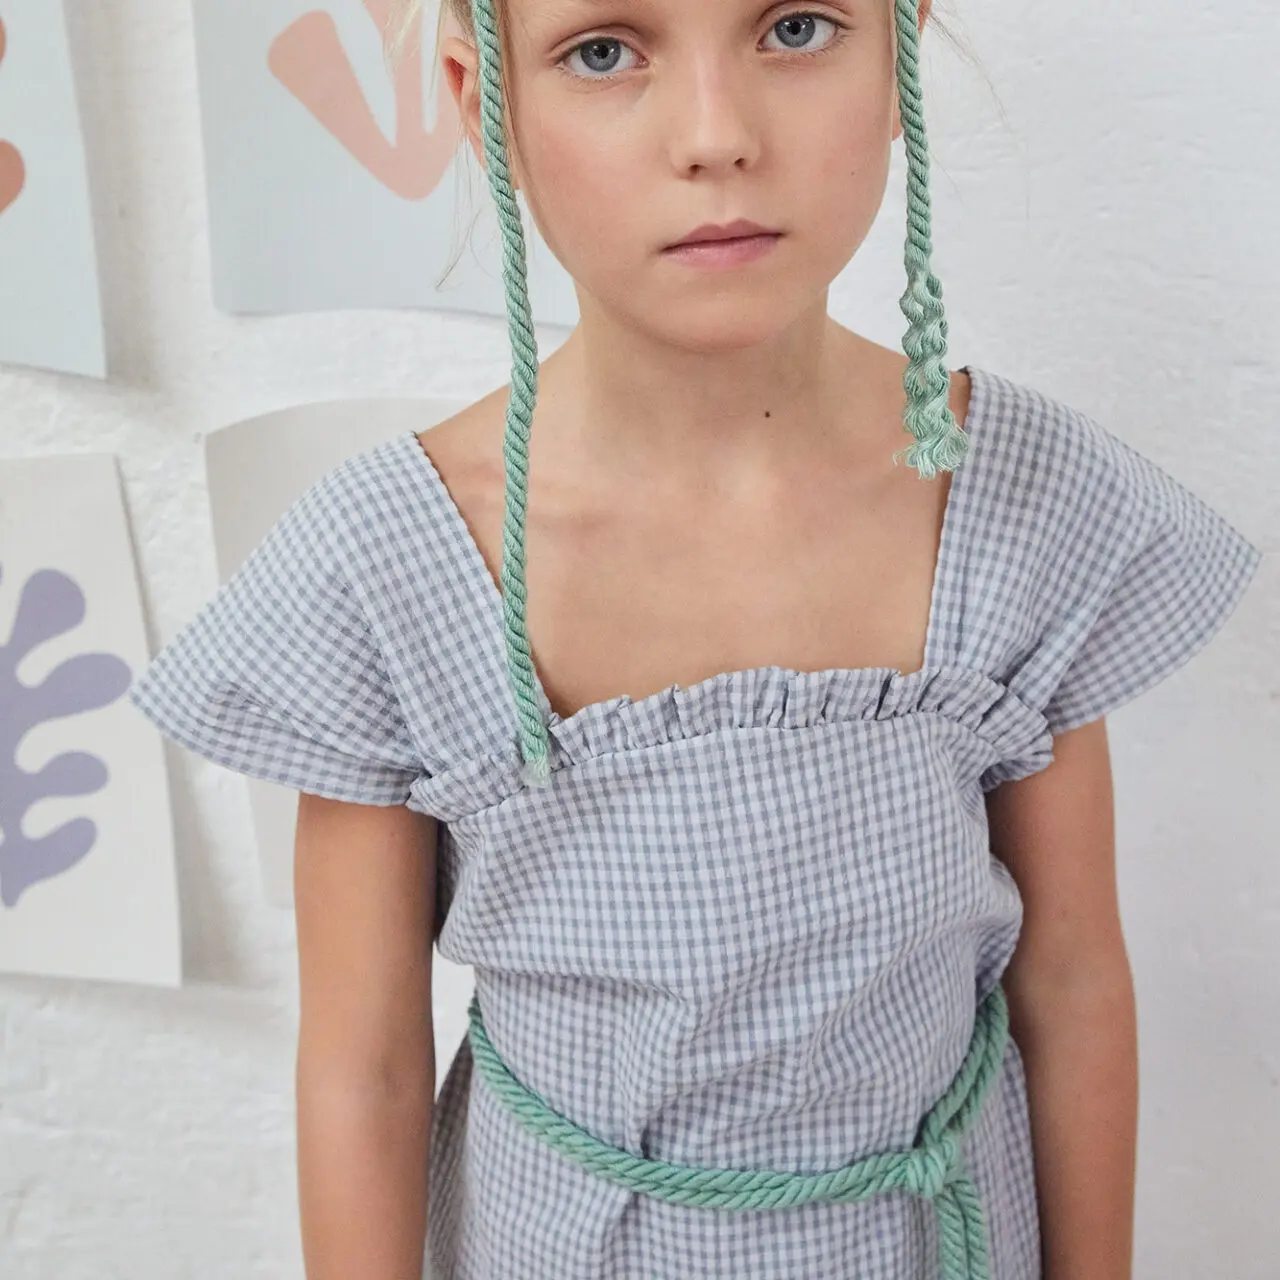 Summer Fashion Kinder Boutique Kleidung Minimales Kleid mit breiten Trägern, abgerundetes Rüschen detail in Ausschnitt und Seitens plits